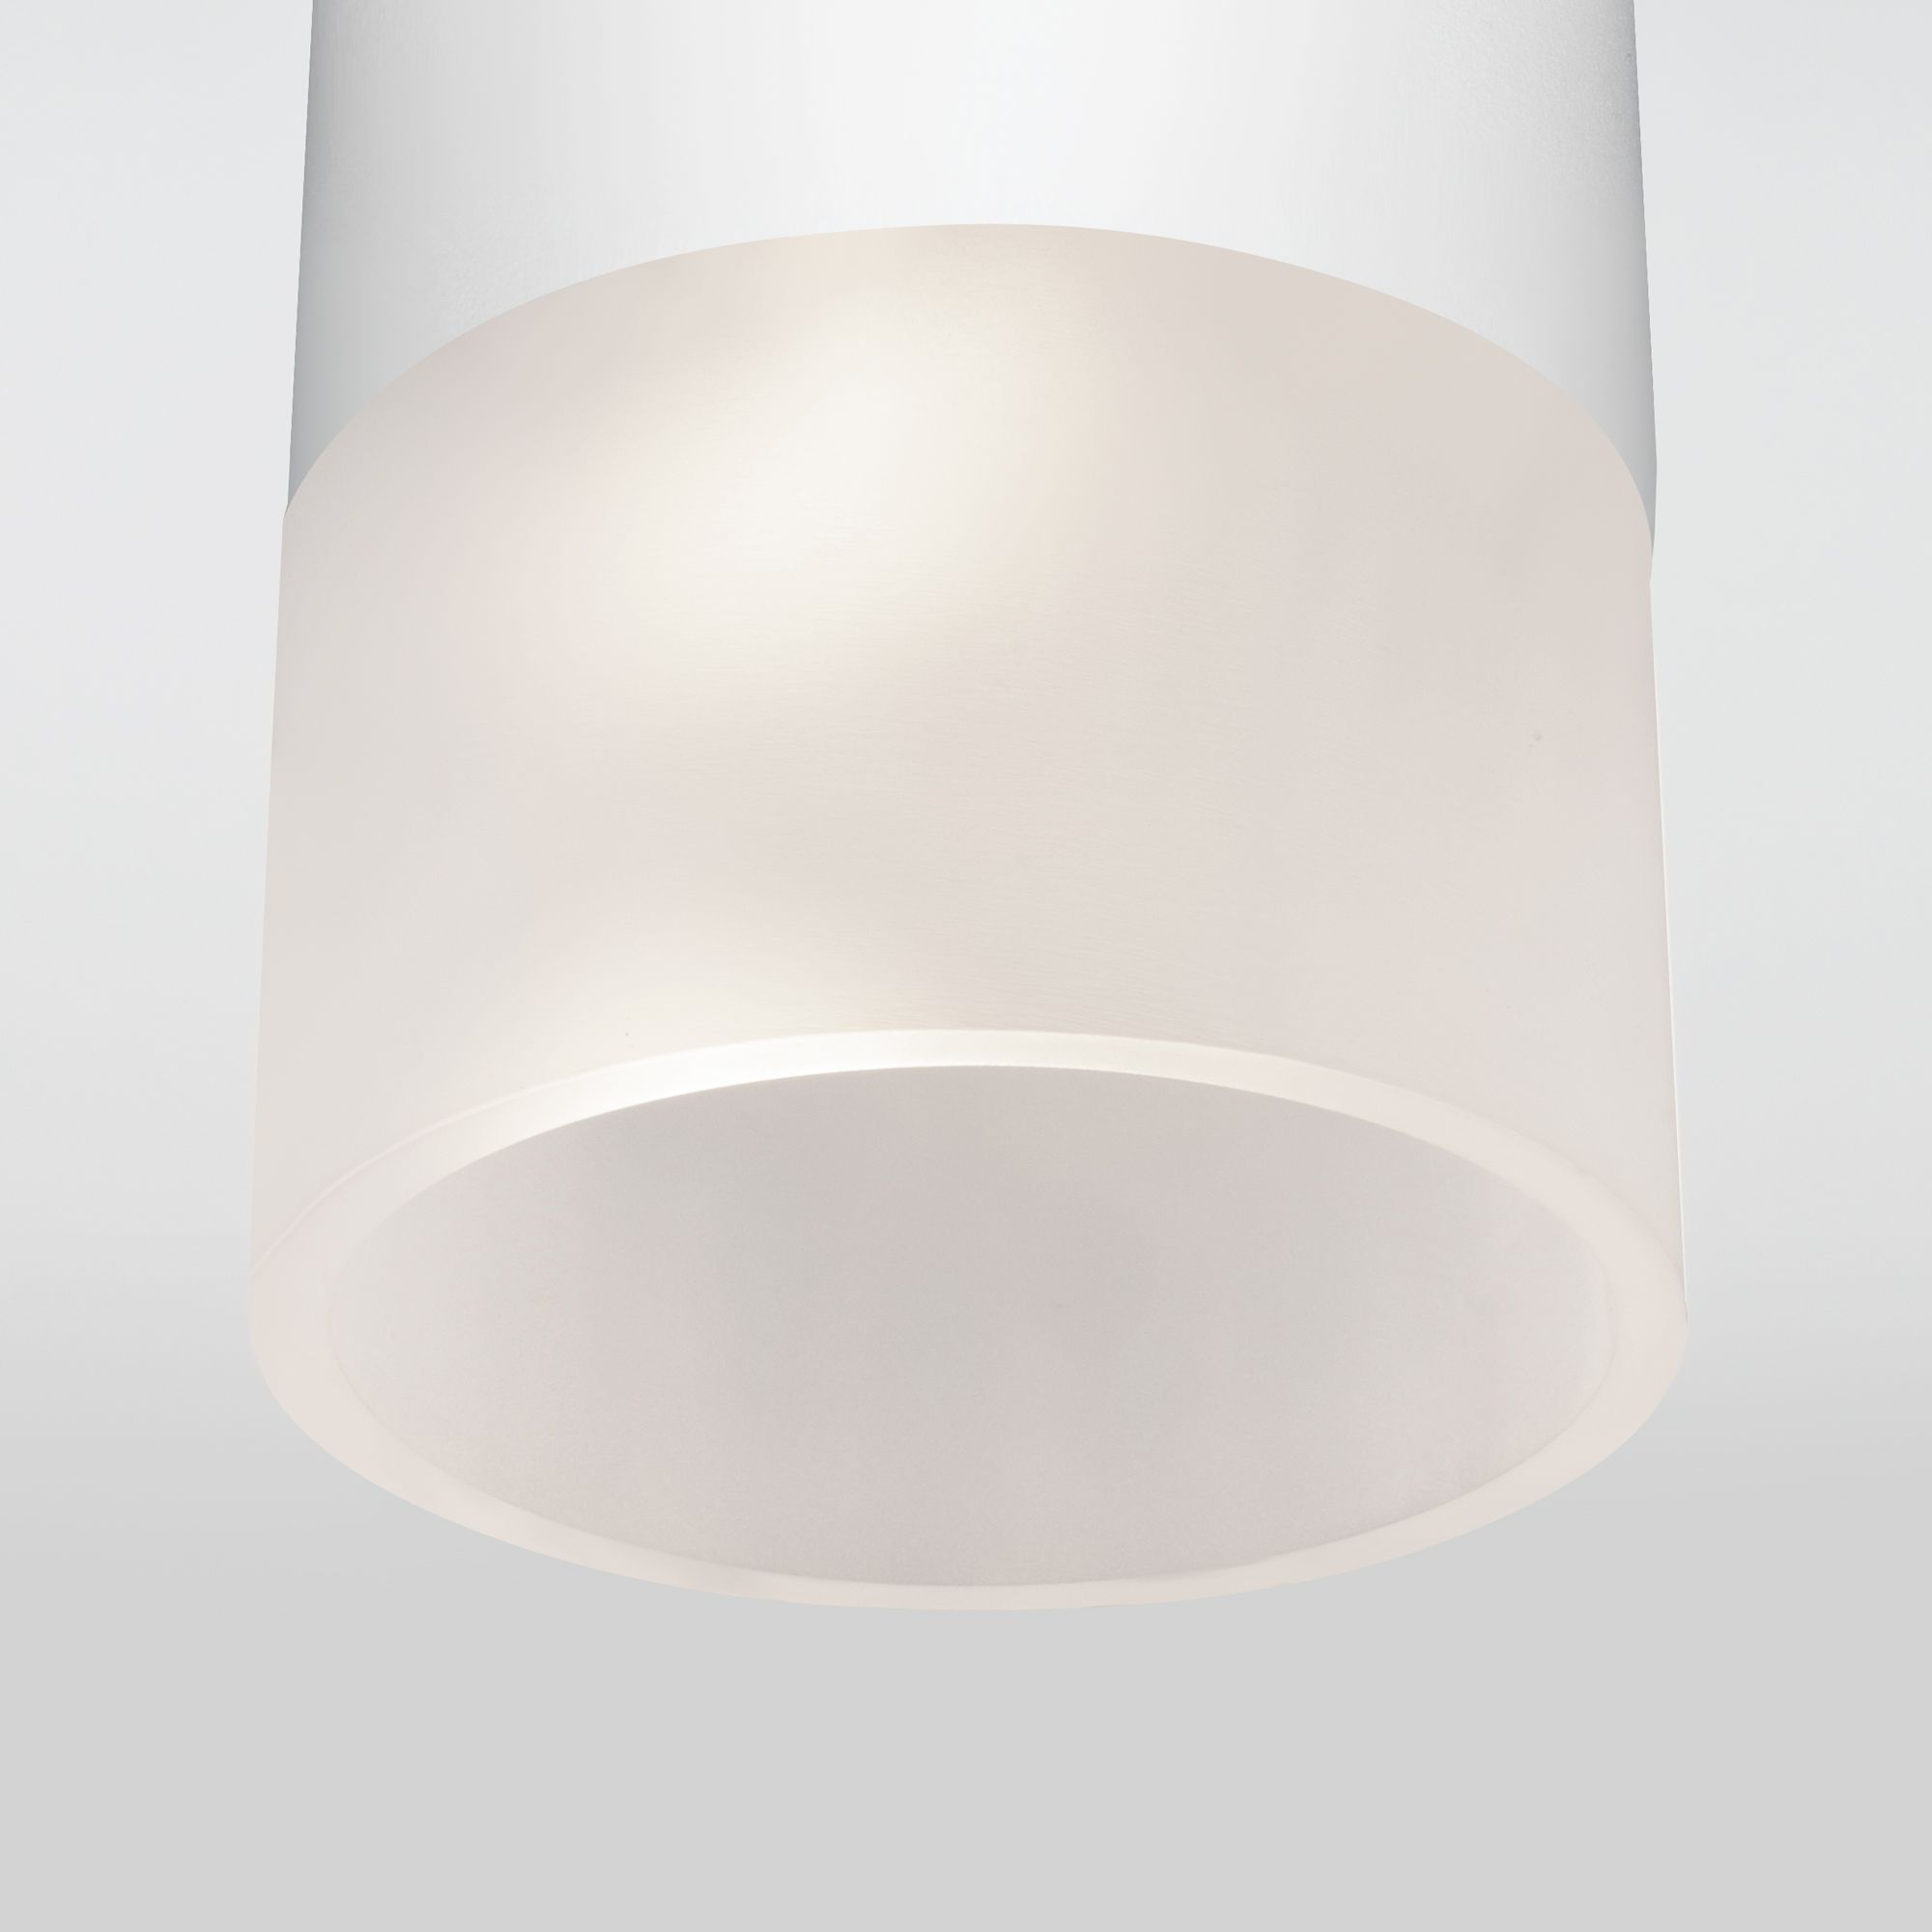 Уличный потолочный светильник Light LED 2106 IP54 35139/H белый